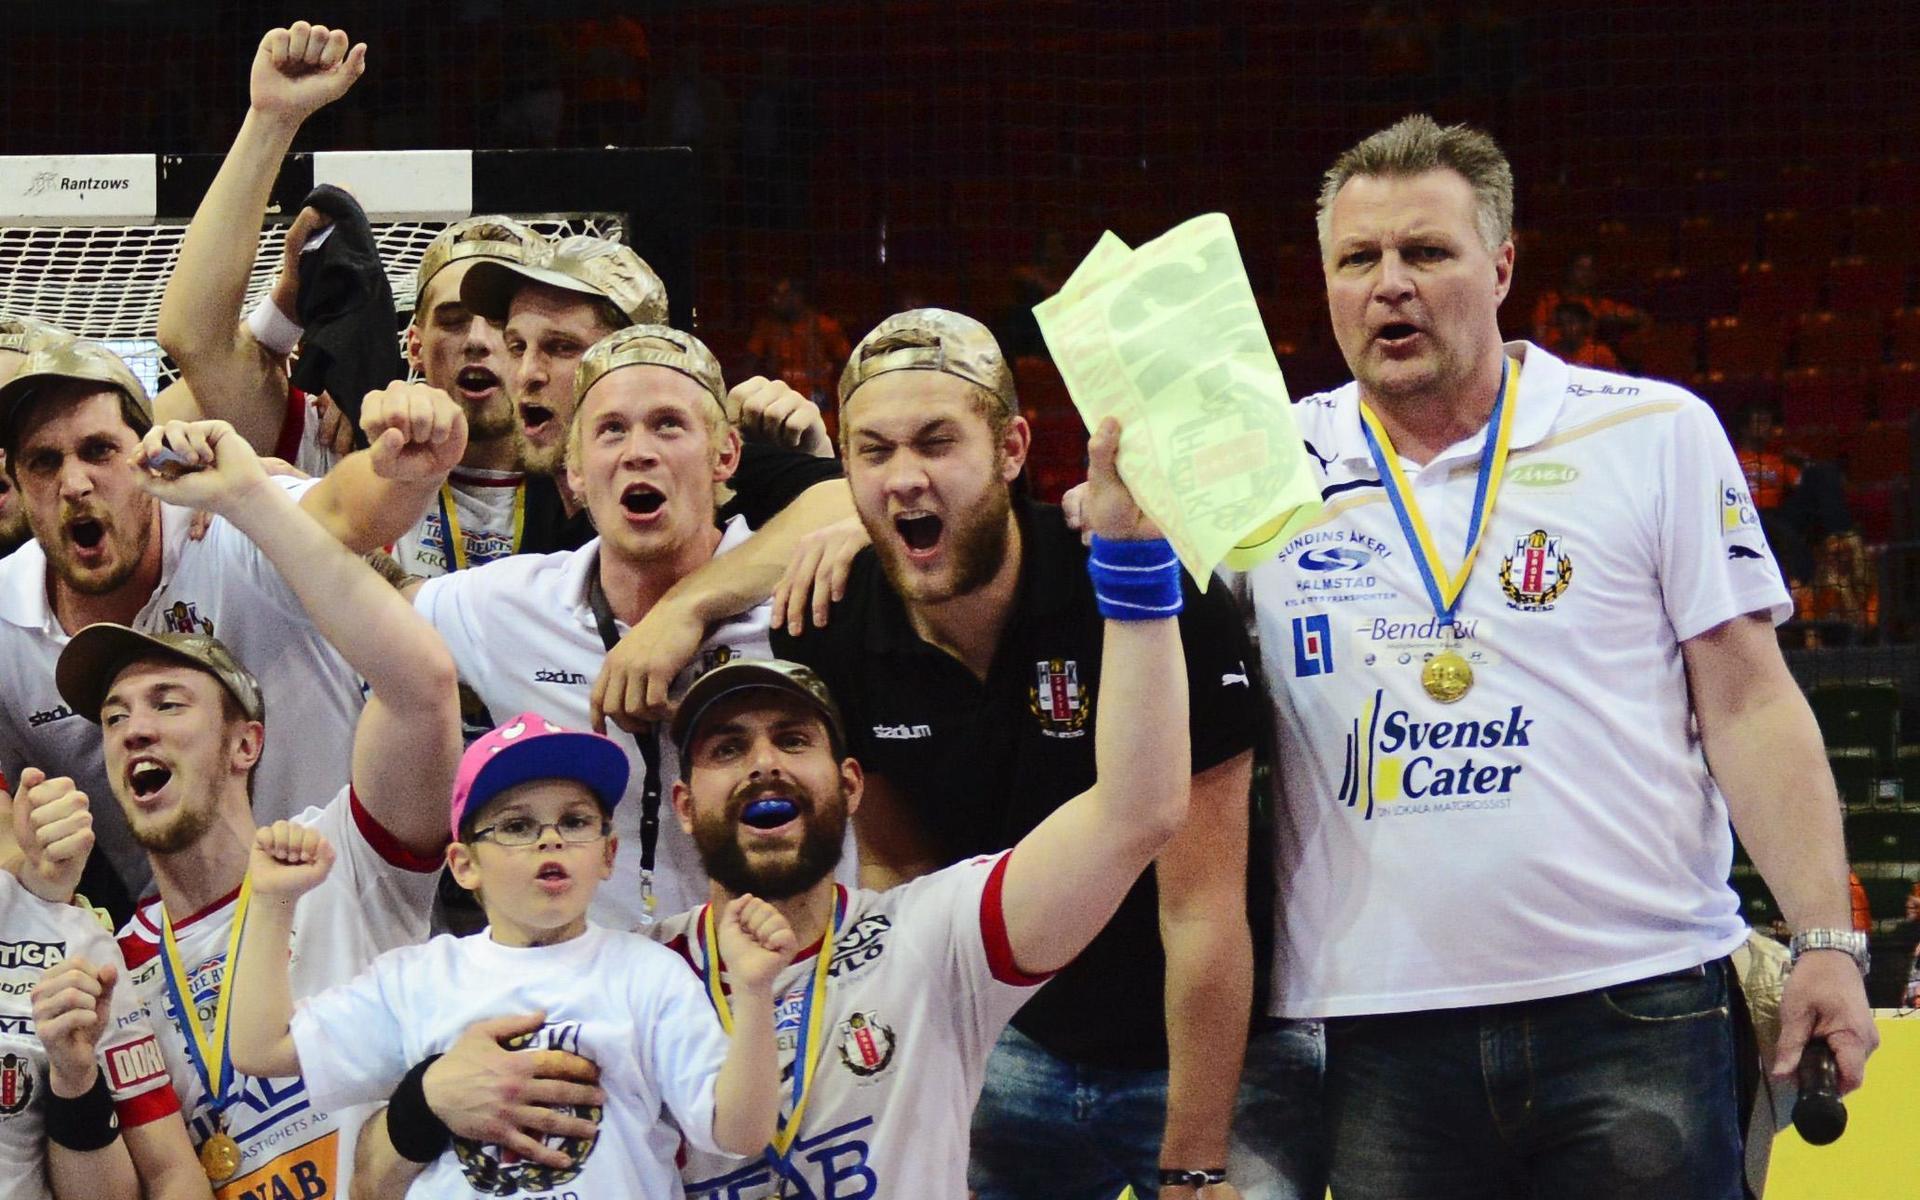 2013 firade Ulf Sivertsson ett nytt SM-guld med Drott.